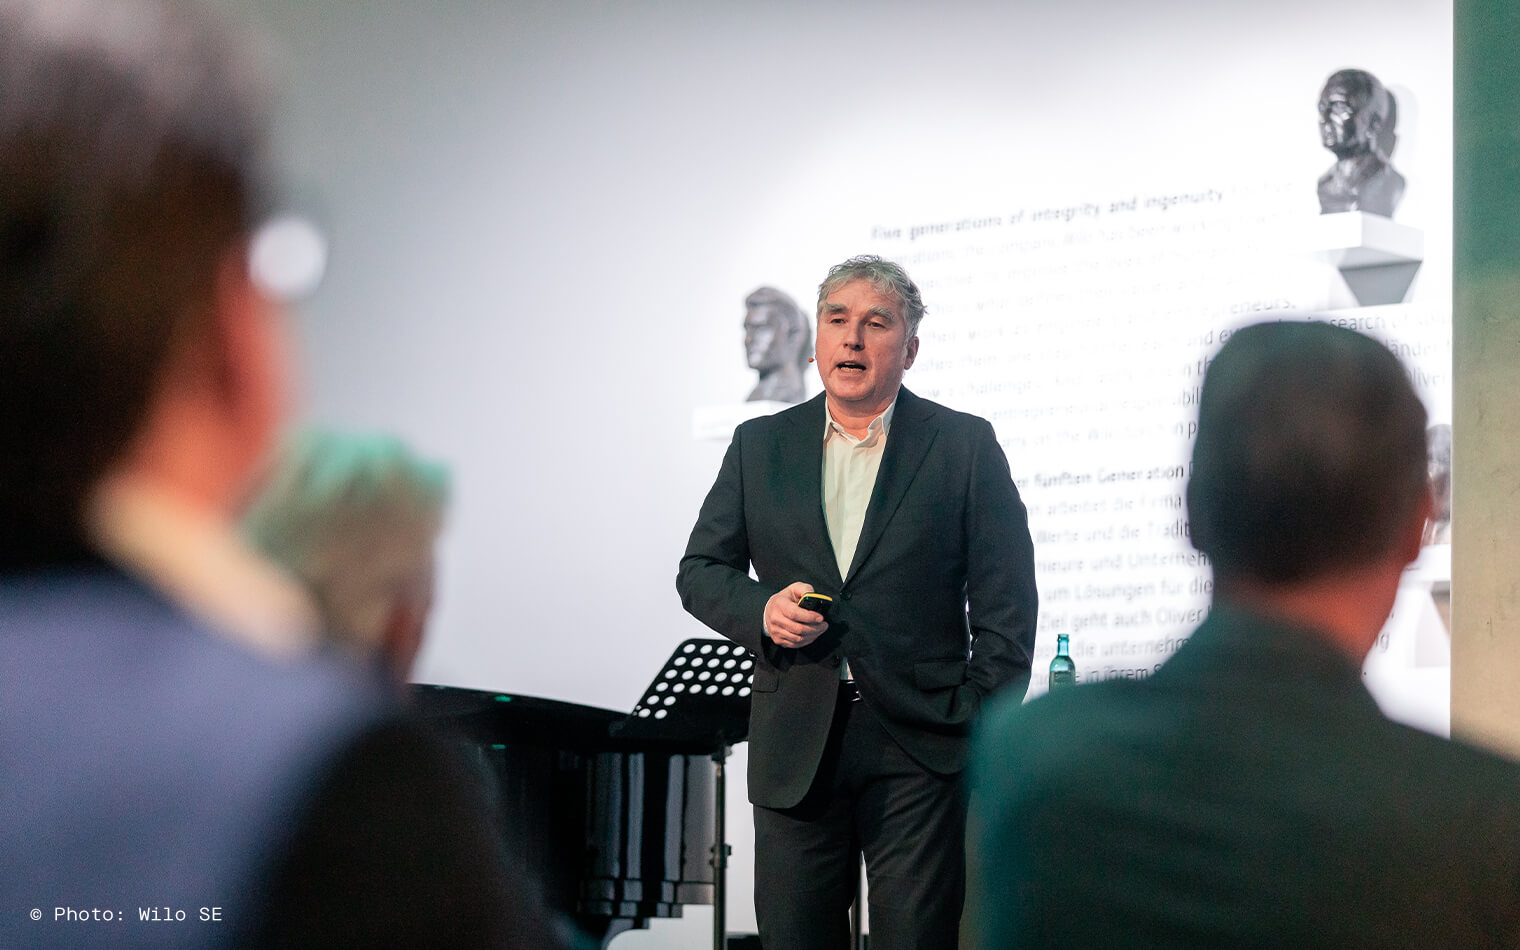 Auf diesem Bild ist Prof. Mehnert während der Präsentation zur feierlichen Eröffnung des digitalen Kunstwerks »Connected« zu sehen.